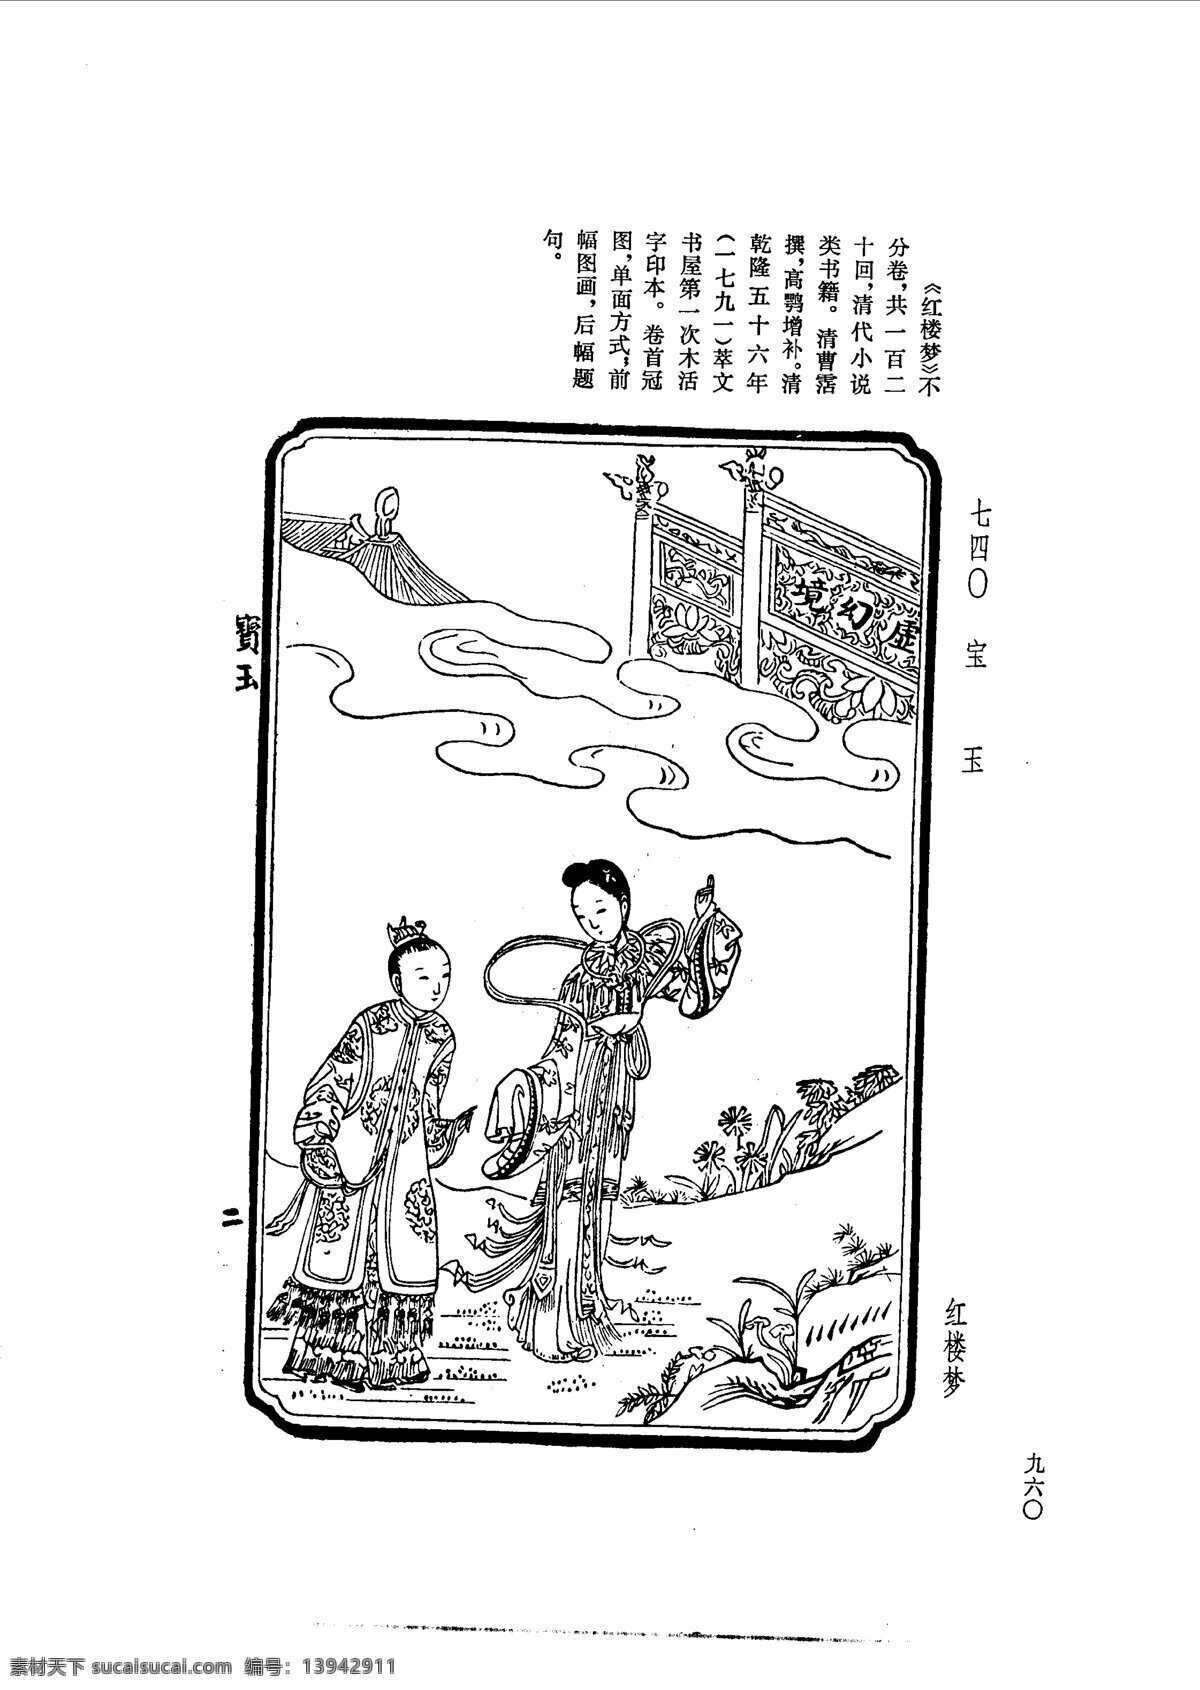 中国 古典文学 版画 选集 上 下册0988 设计素材 版画世界 书画美术 白色